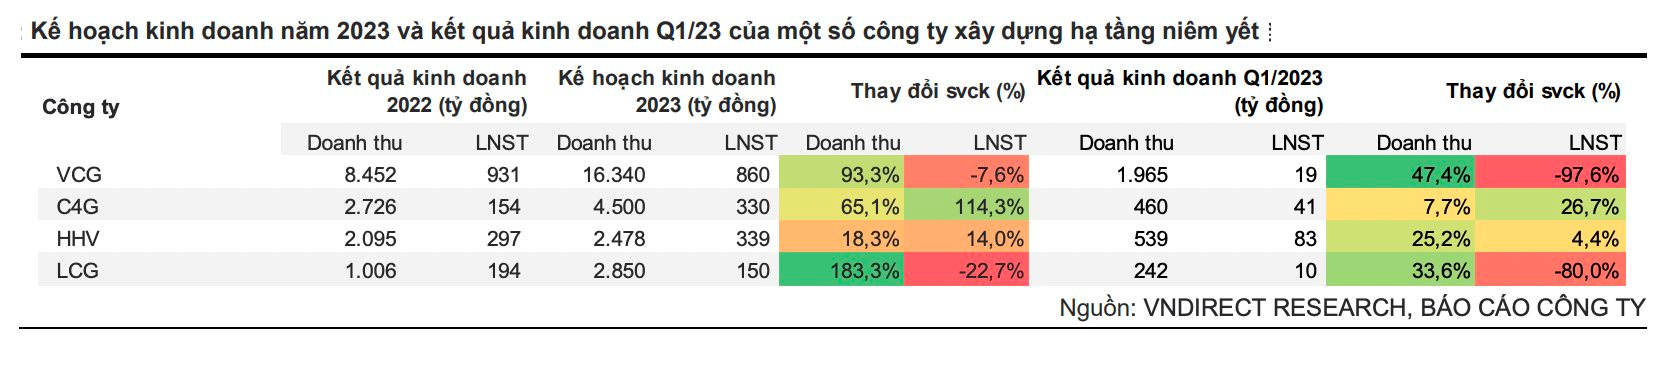 VNDirect: Được kỳ vọng hưởng lợi từ dự án cao tốc Bắc – Nam, lợi nhuận C4G, LCG, HHV… vẫn giảm mạnh trong quý 1/2023, do đâu? - Ảnh 1.